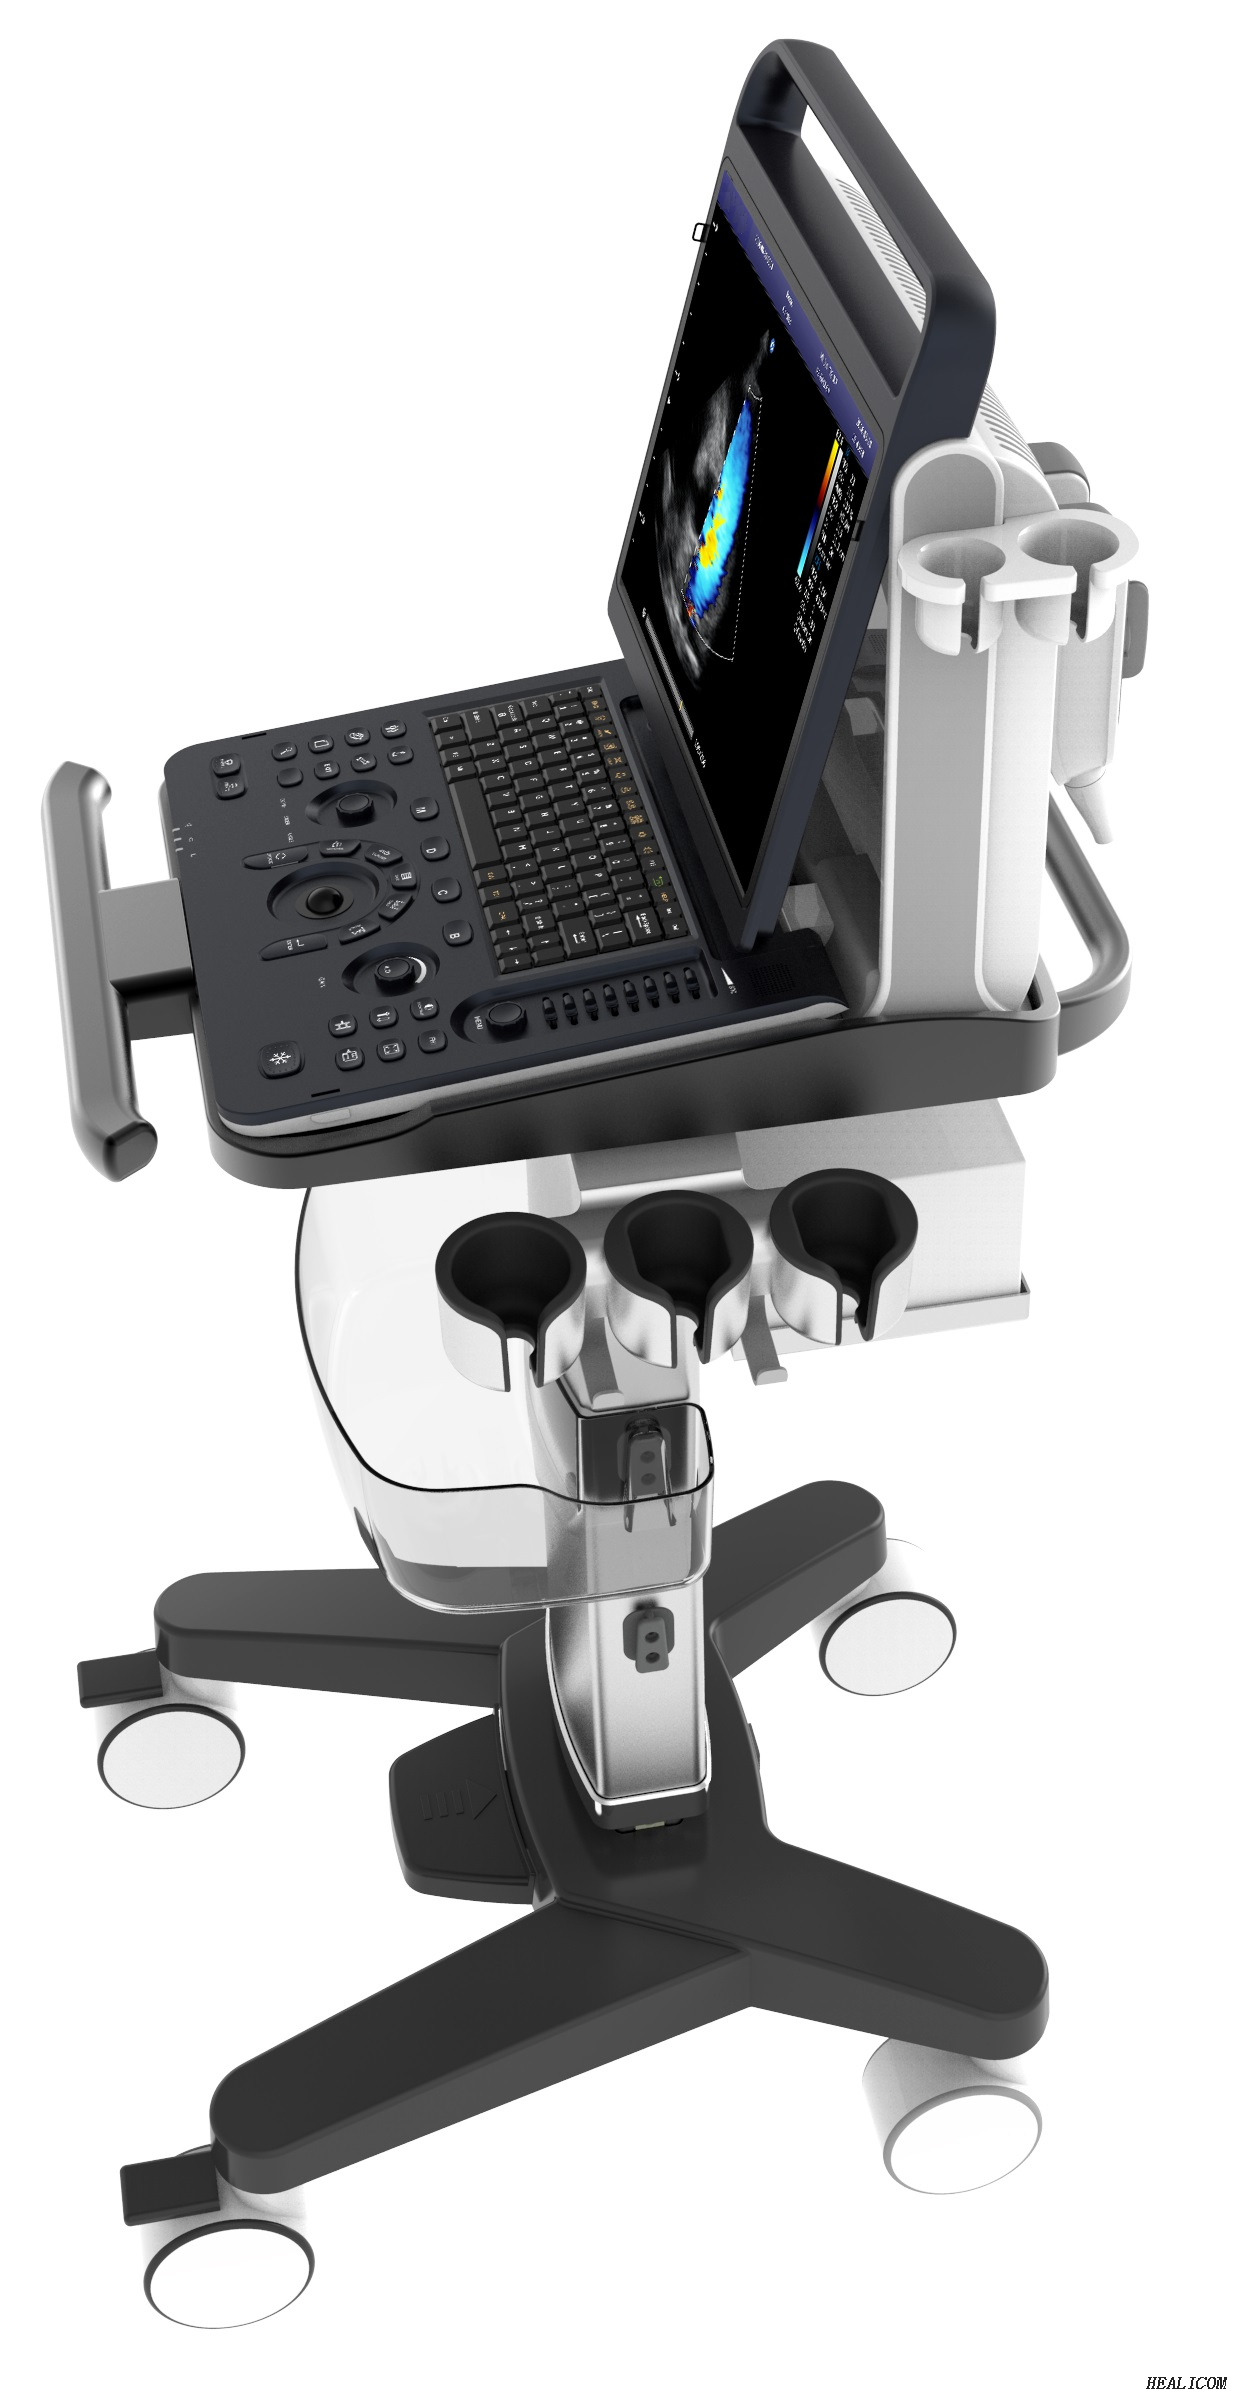 Système de diagnostic HUC-590 Machine à ultrasons numérique portable Doppler couleur 3D 4DSystème de diagnostic HUC-590 Machine à ultrasons numérique portable Doppler couleur 3D 4D